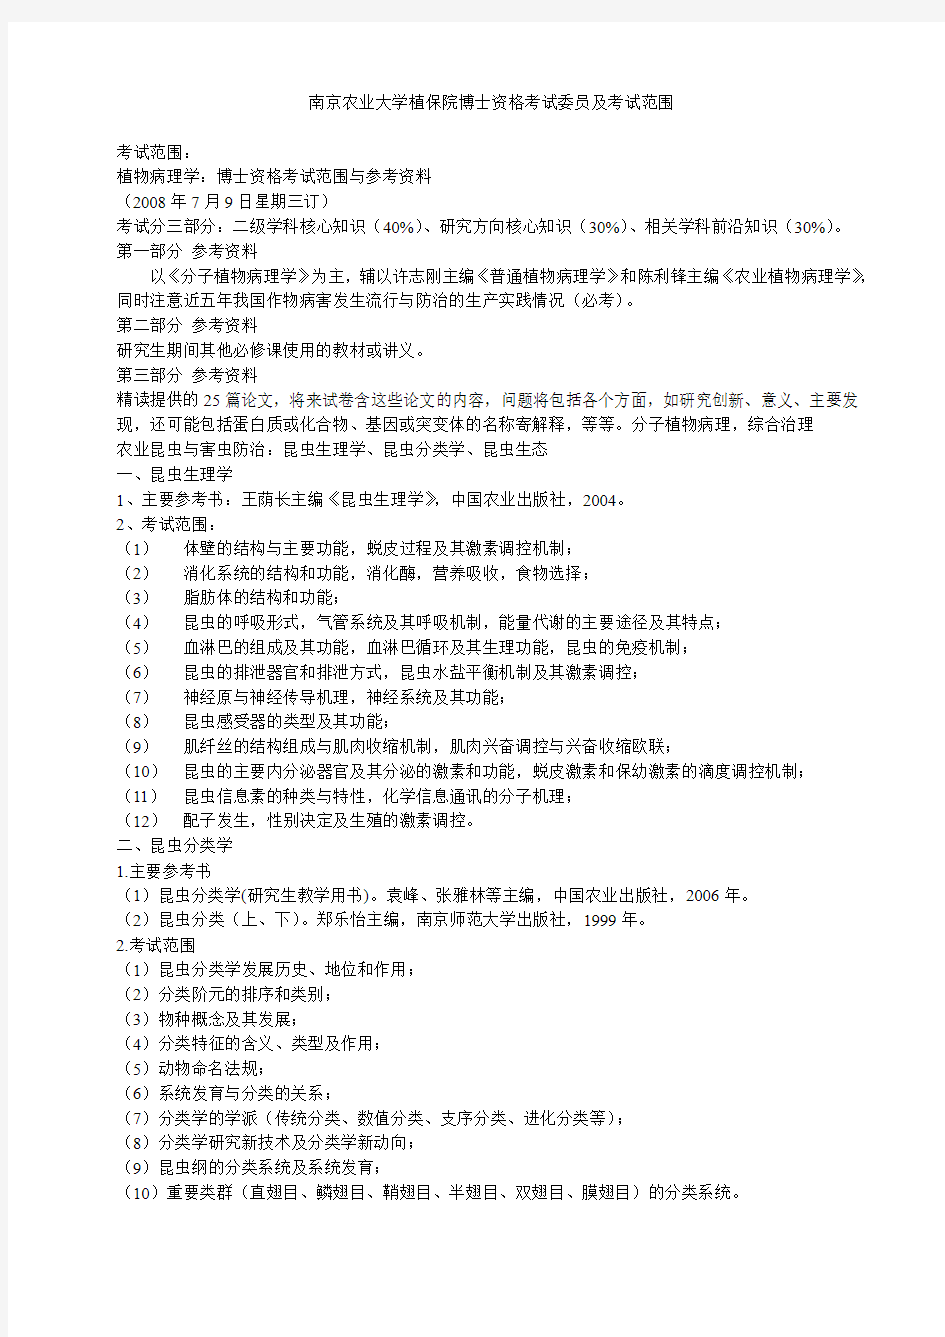 南京农业大学植保院博士资格考试委员及考试范围